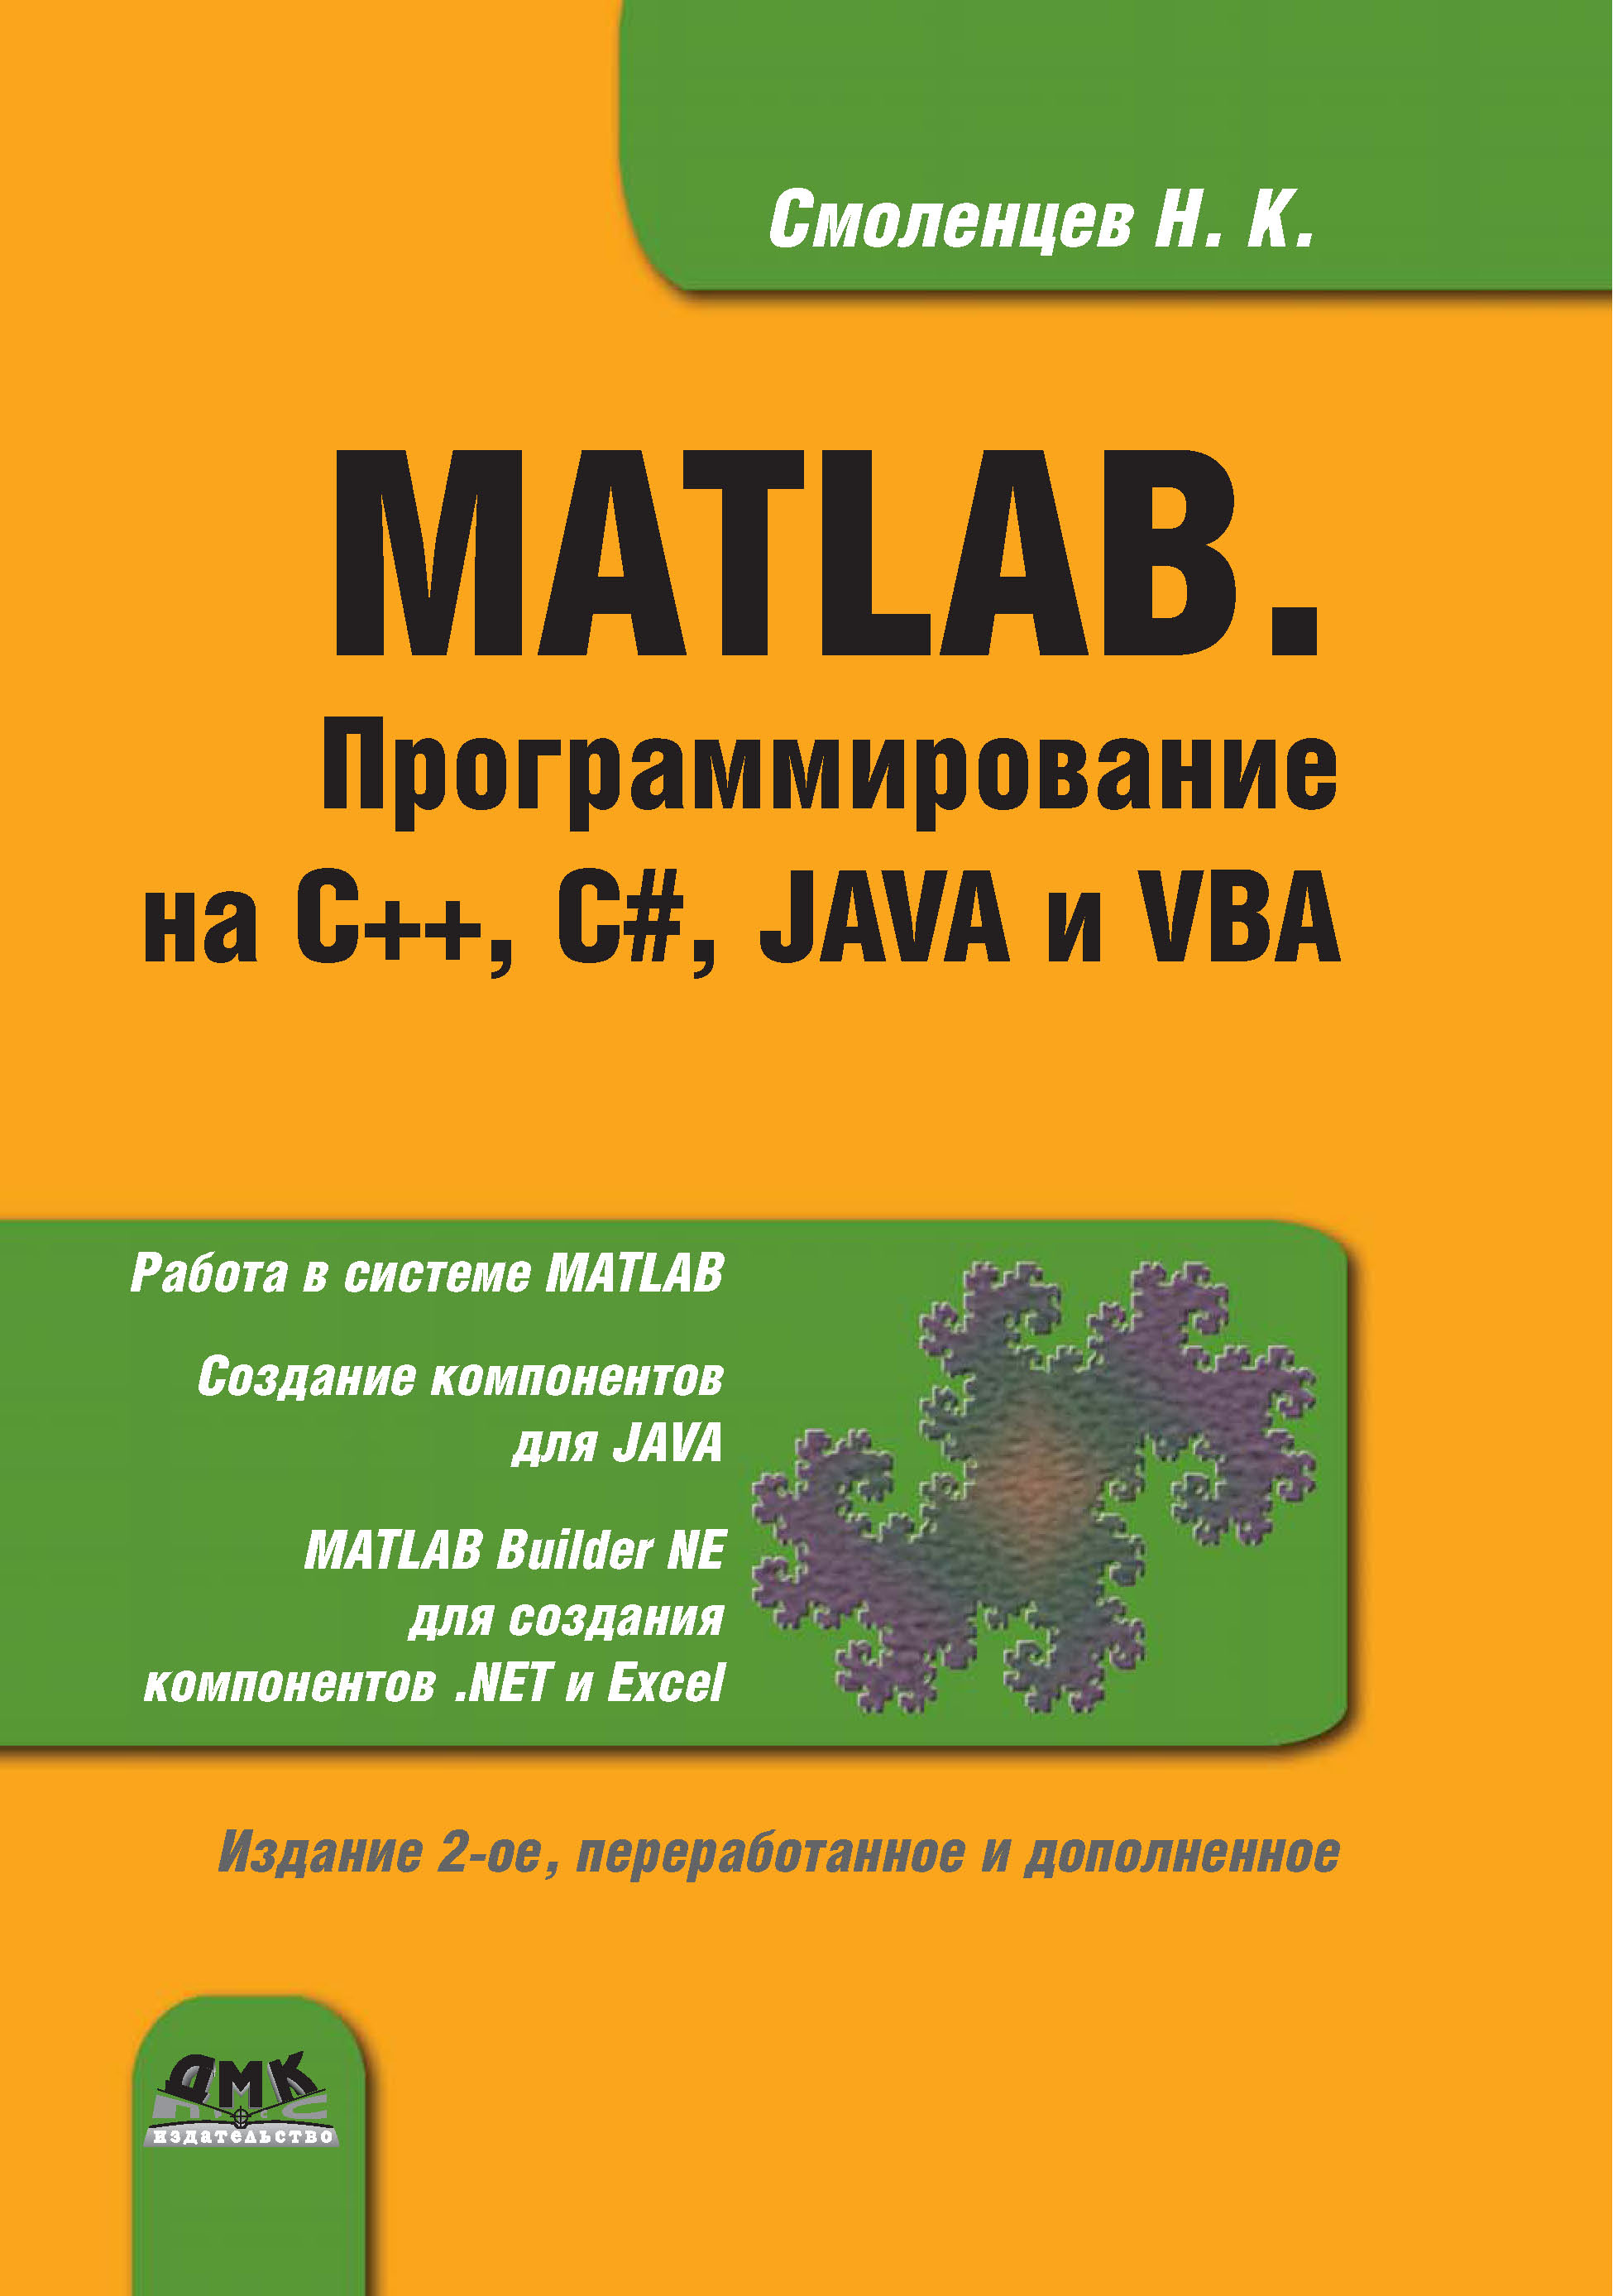 Книга  MATLAB. Программирование на С++, С#, Java и VBA созданная Николай Смоленцев может относится к жанру математика, программирование, программы. Стоимость электронной книги MATLAB. Программирование на С++, С#, Java и VBA с идентификатором 22785017 составляет 599.00 руб.